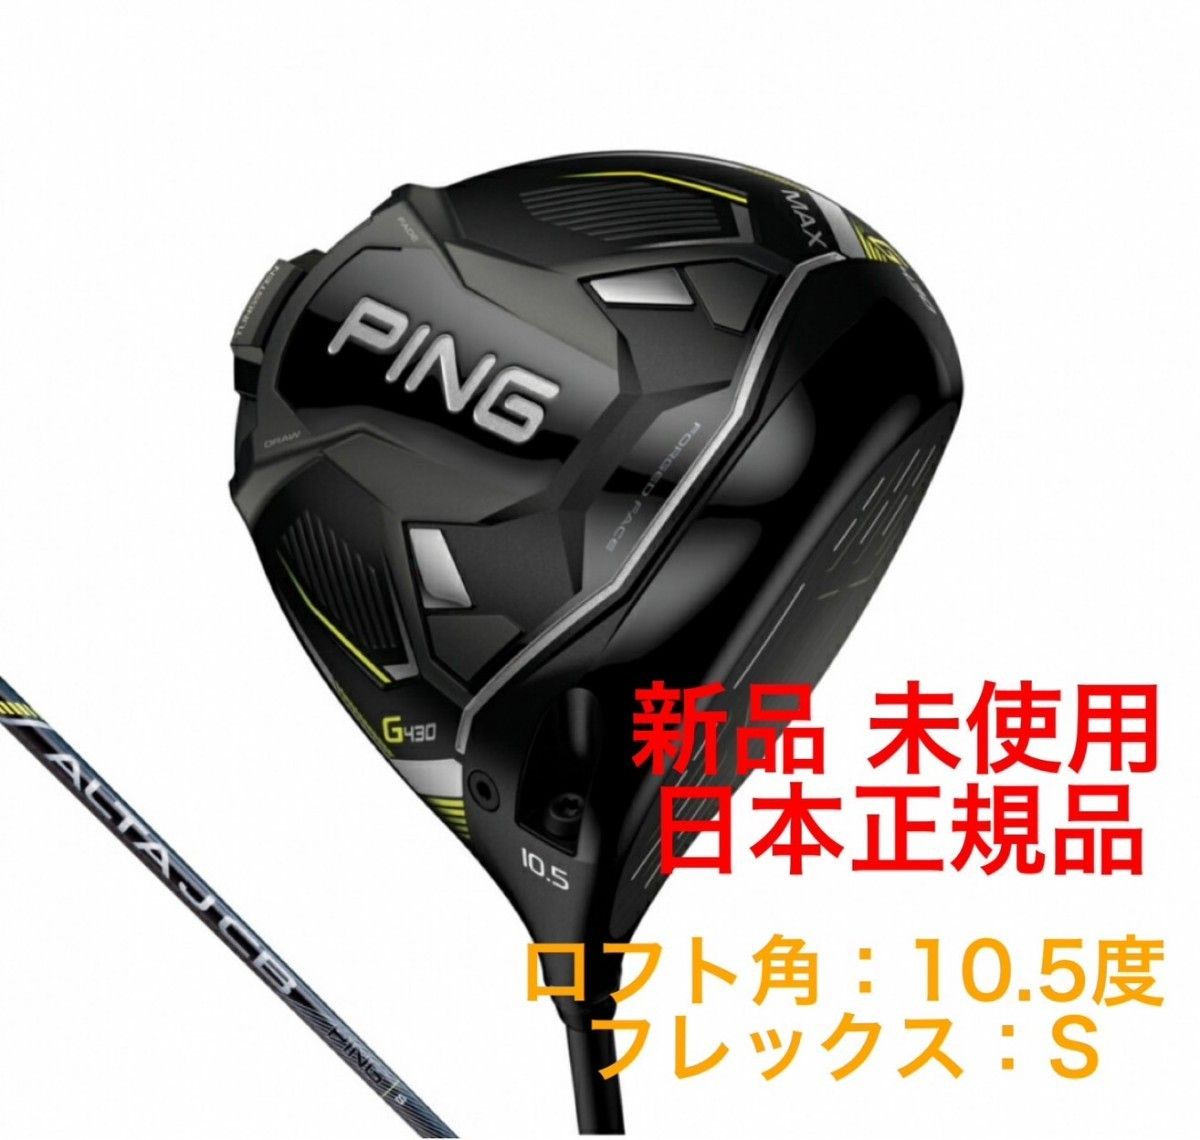 新品 PING ピン ドライバー G430 MAX / ALTA J CB BLACK ゴルフ クラブ